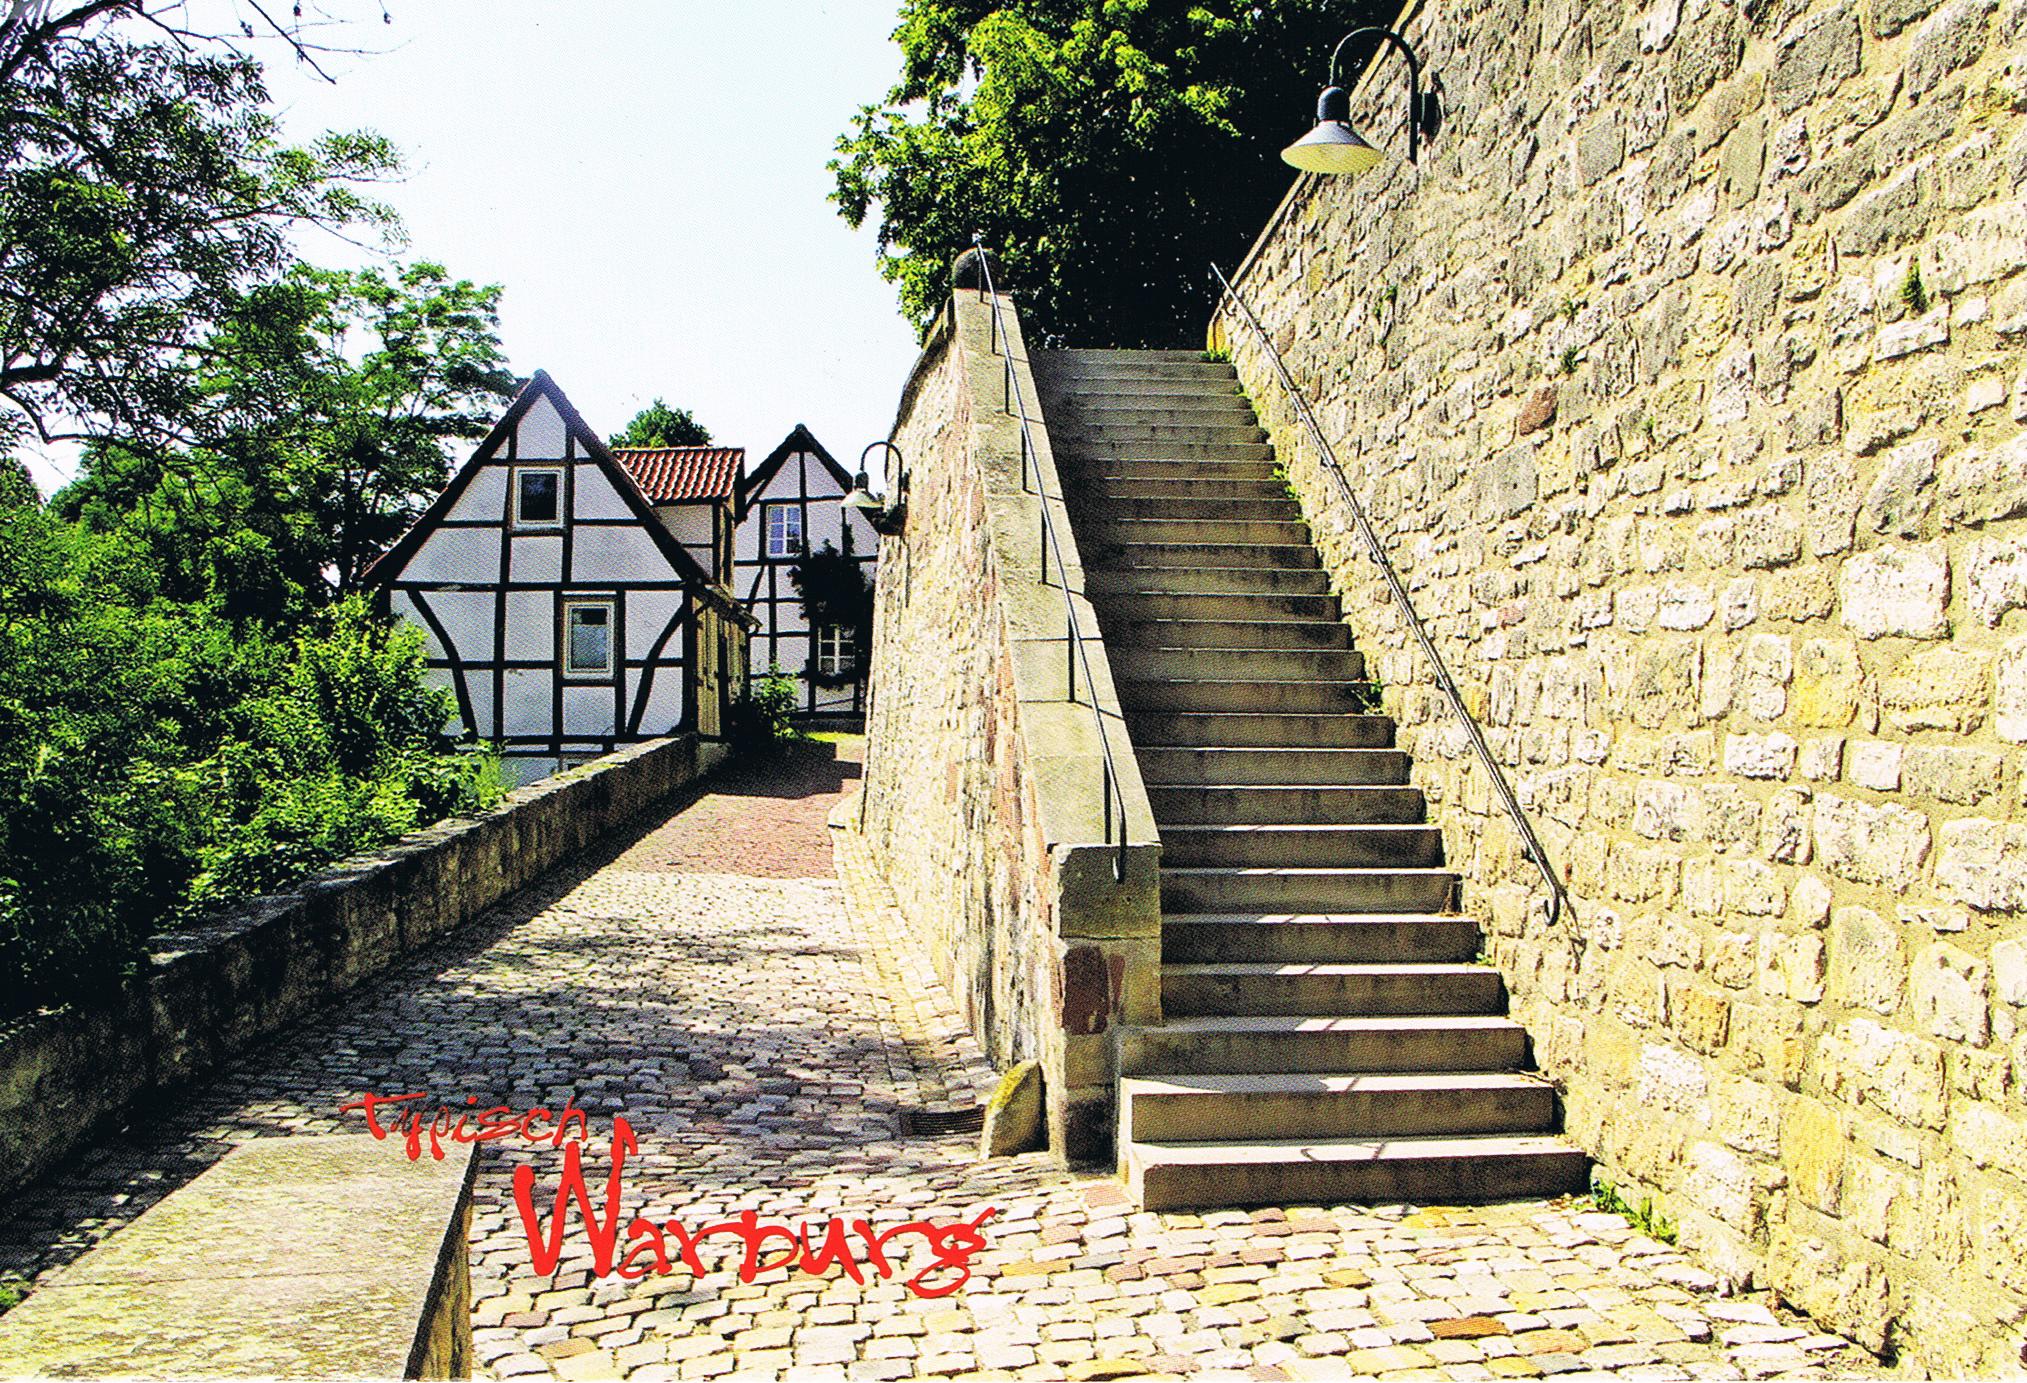 Typisch Warburg - Fachwerkhäuser an der alten Stadtmauer